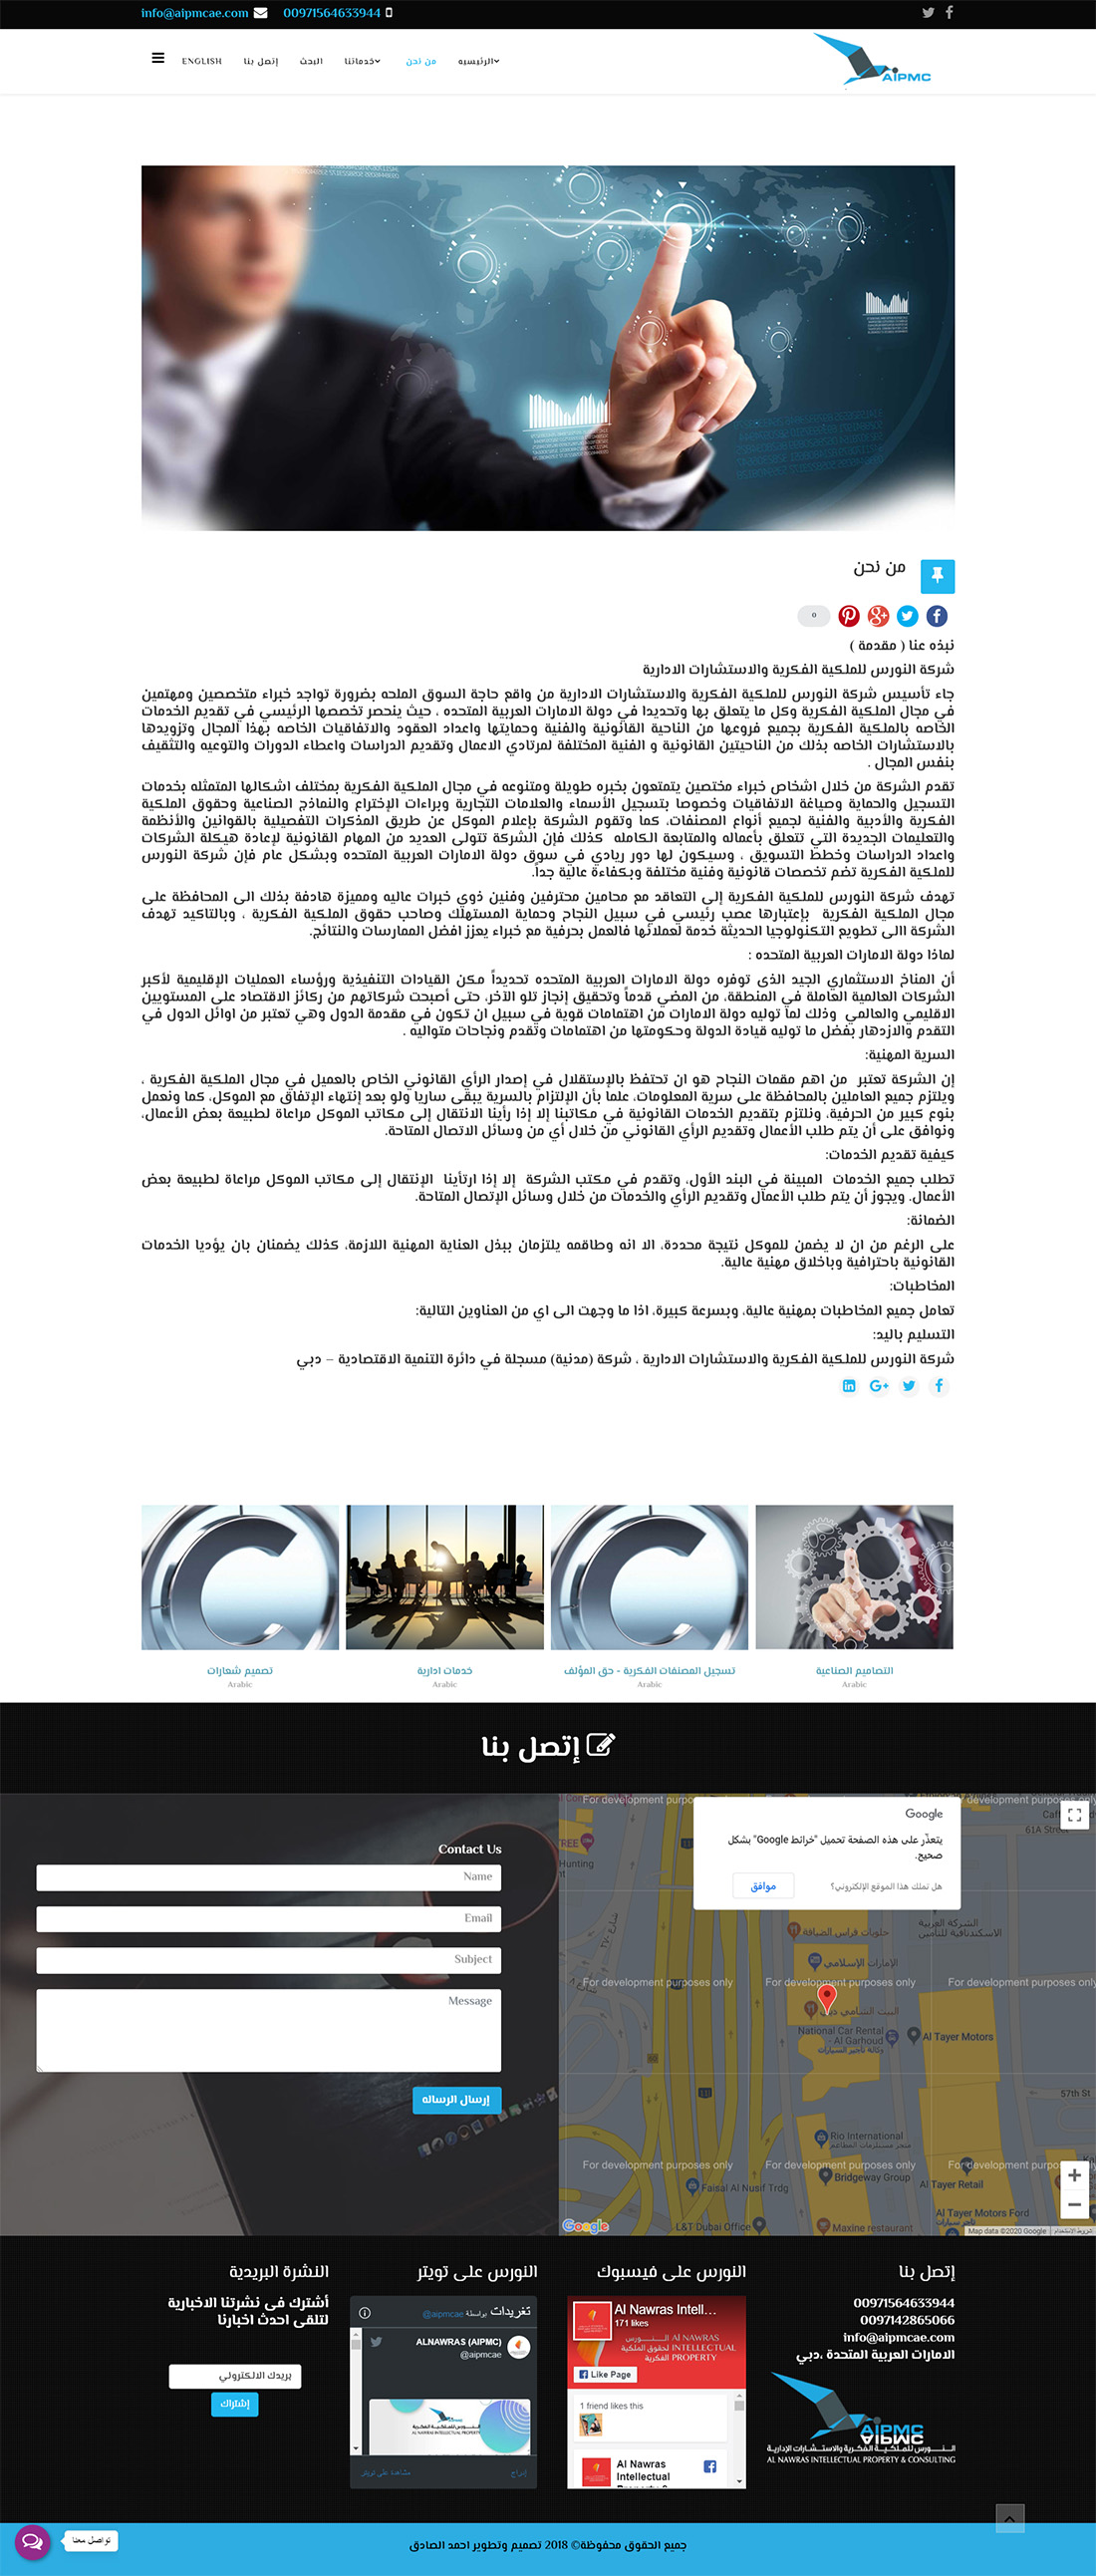 تصميم موقع الكتروني لشركة النورس للملكية الفكرية والاستشارات الادارية فى السعودية